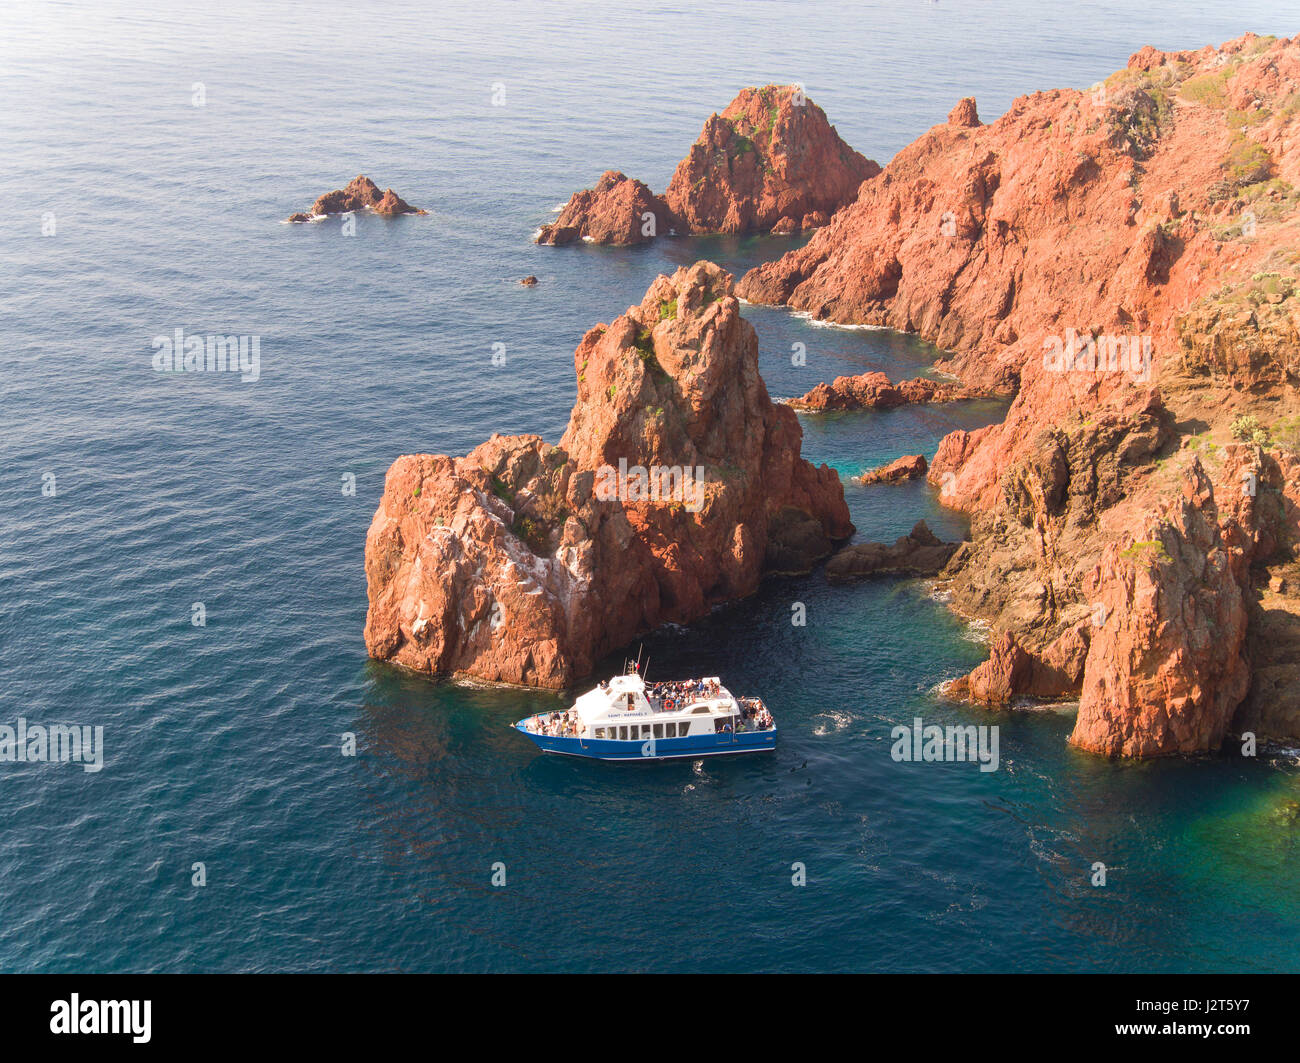 VUE AÉRIENNE. Touristes sur un bateau touristique en admirant le spectaculaire rocher rouge du Cap du Dramont. Saint-Raphaël, Var, Côte d'Azur, France. Banque D'Images